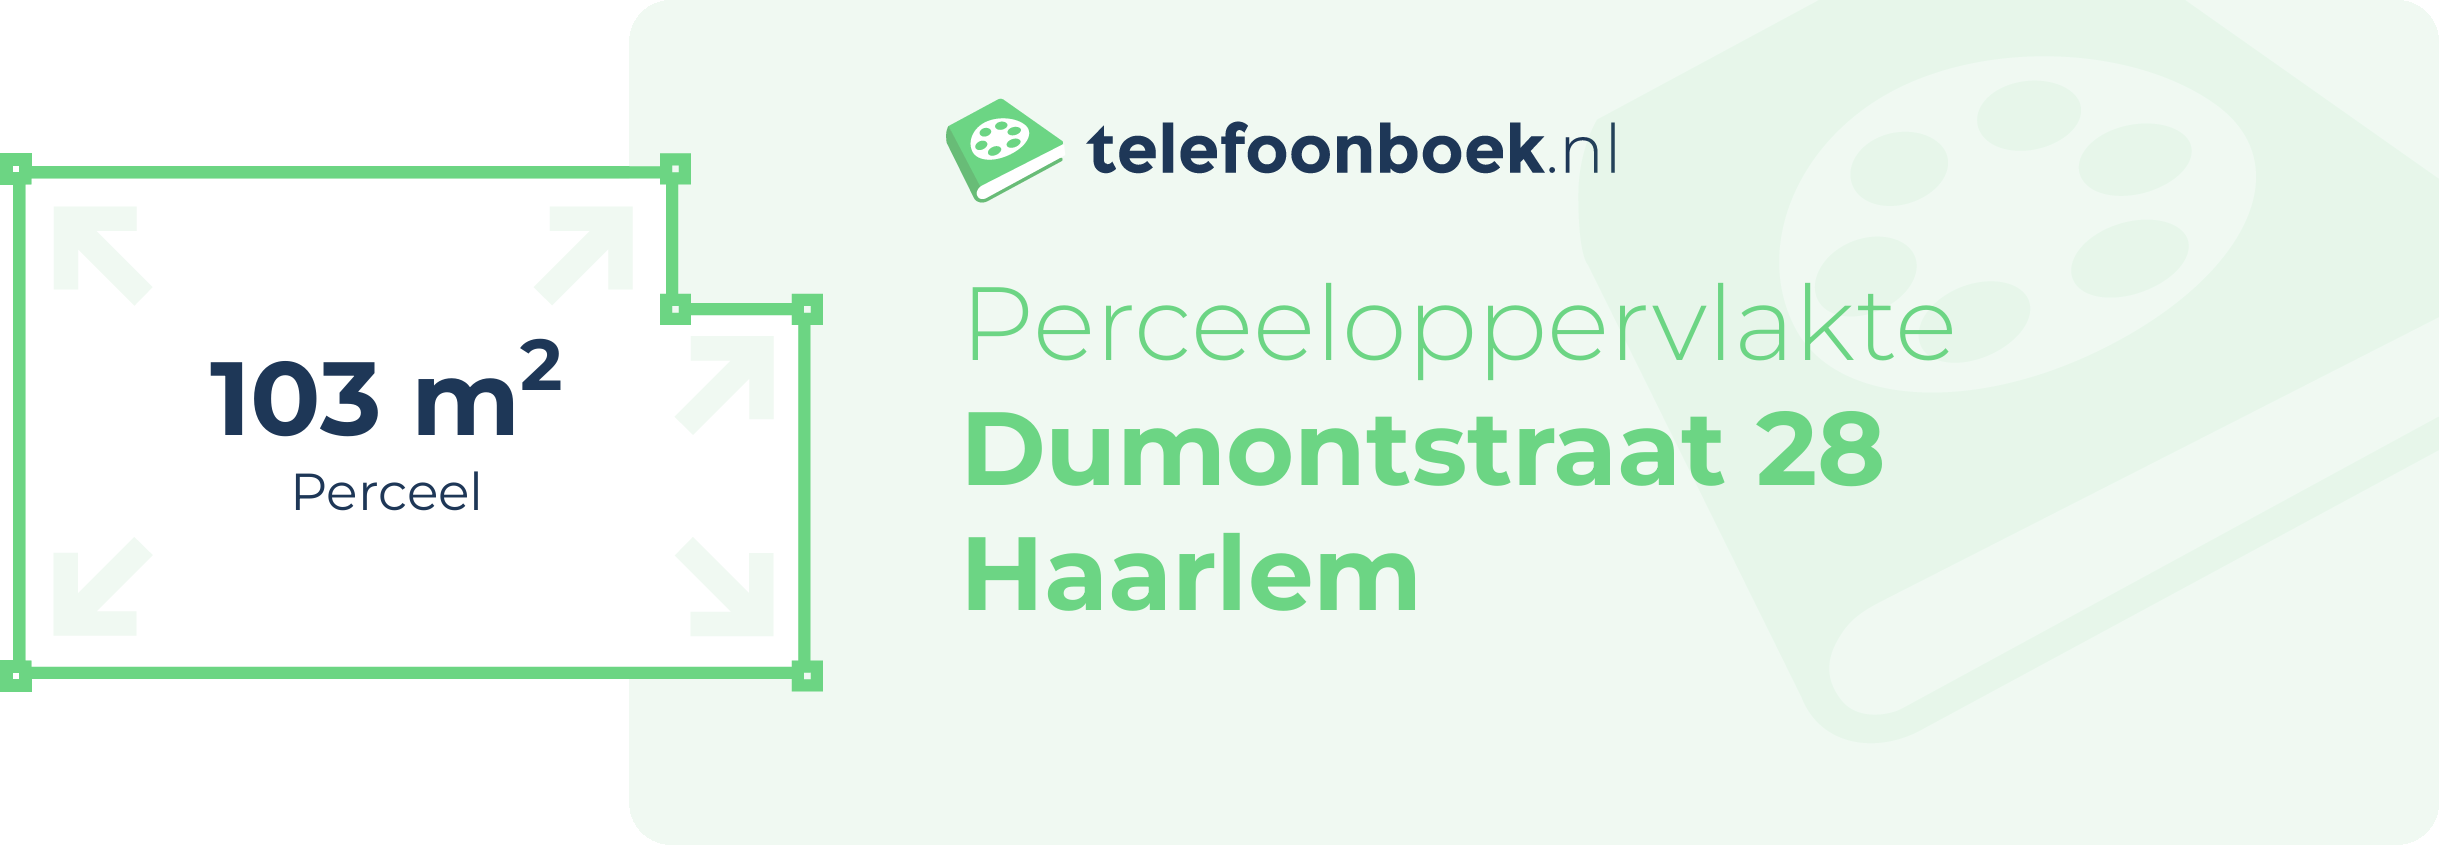 Perceeloppervlakte Dumontstraat 28 Haarlem